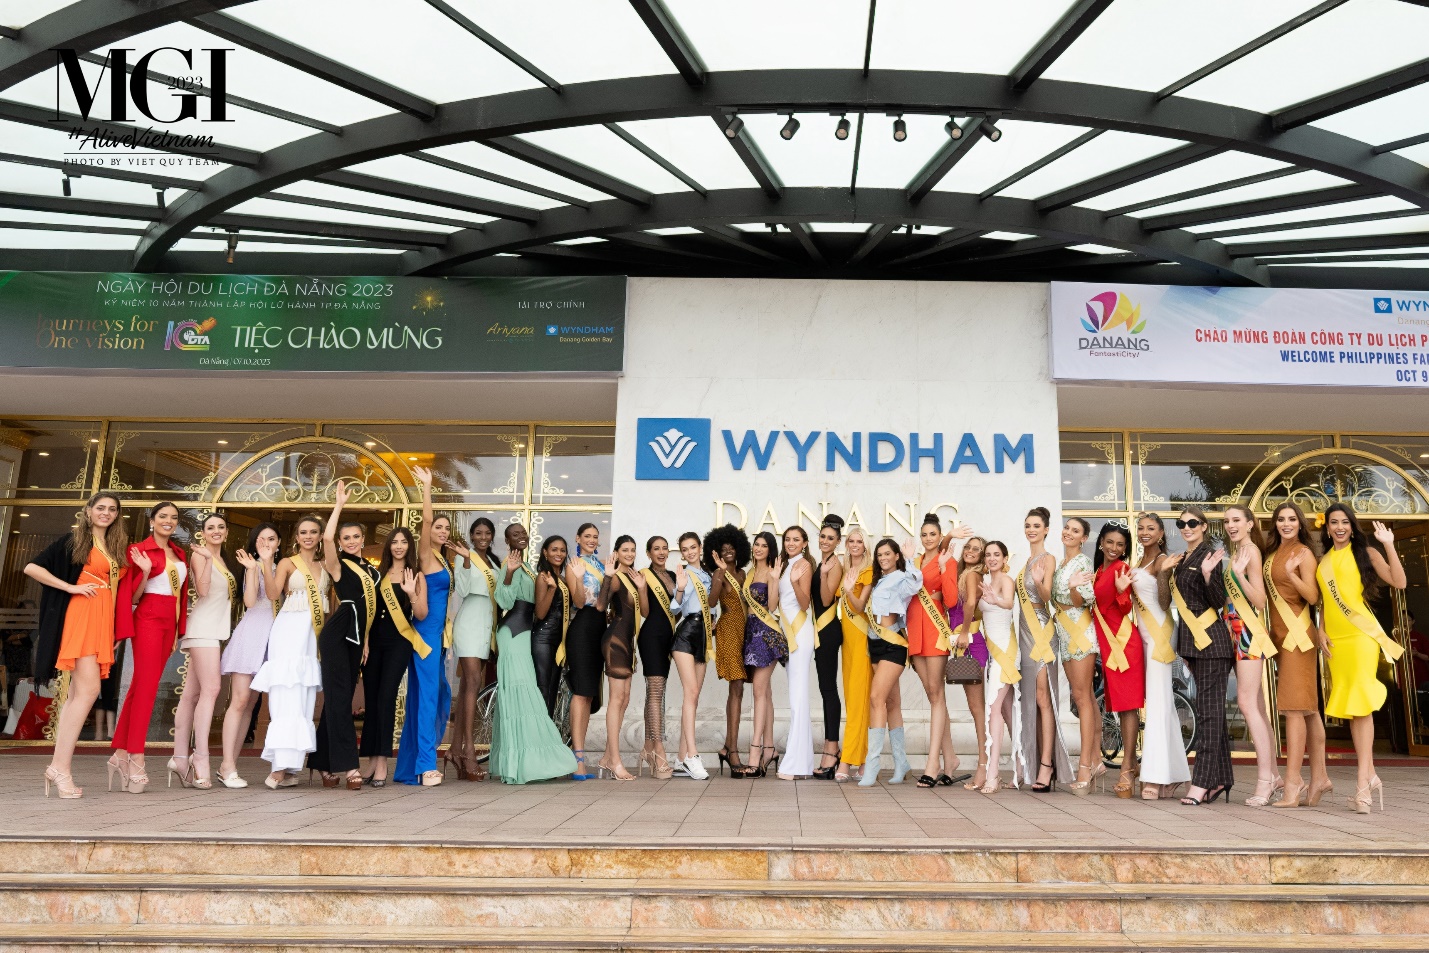 Khám phá khách sạn dát vàng - nơi các thí sinh Miss Grand International 2023 lưu trú tại Đà Nẵng - Ảnh 2.